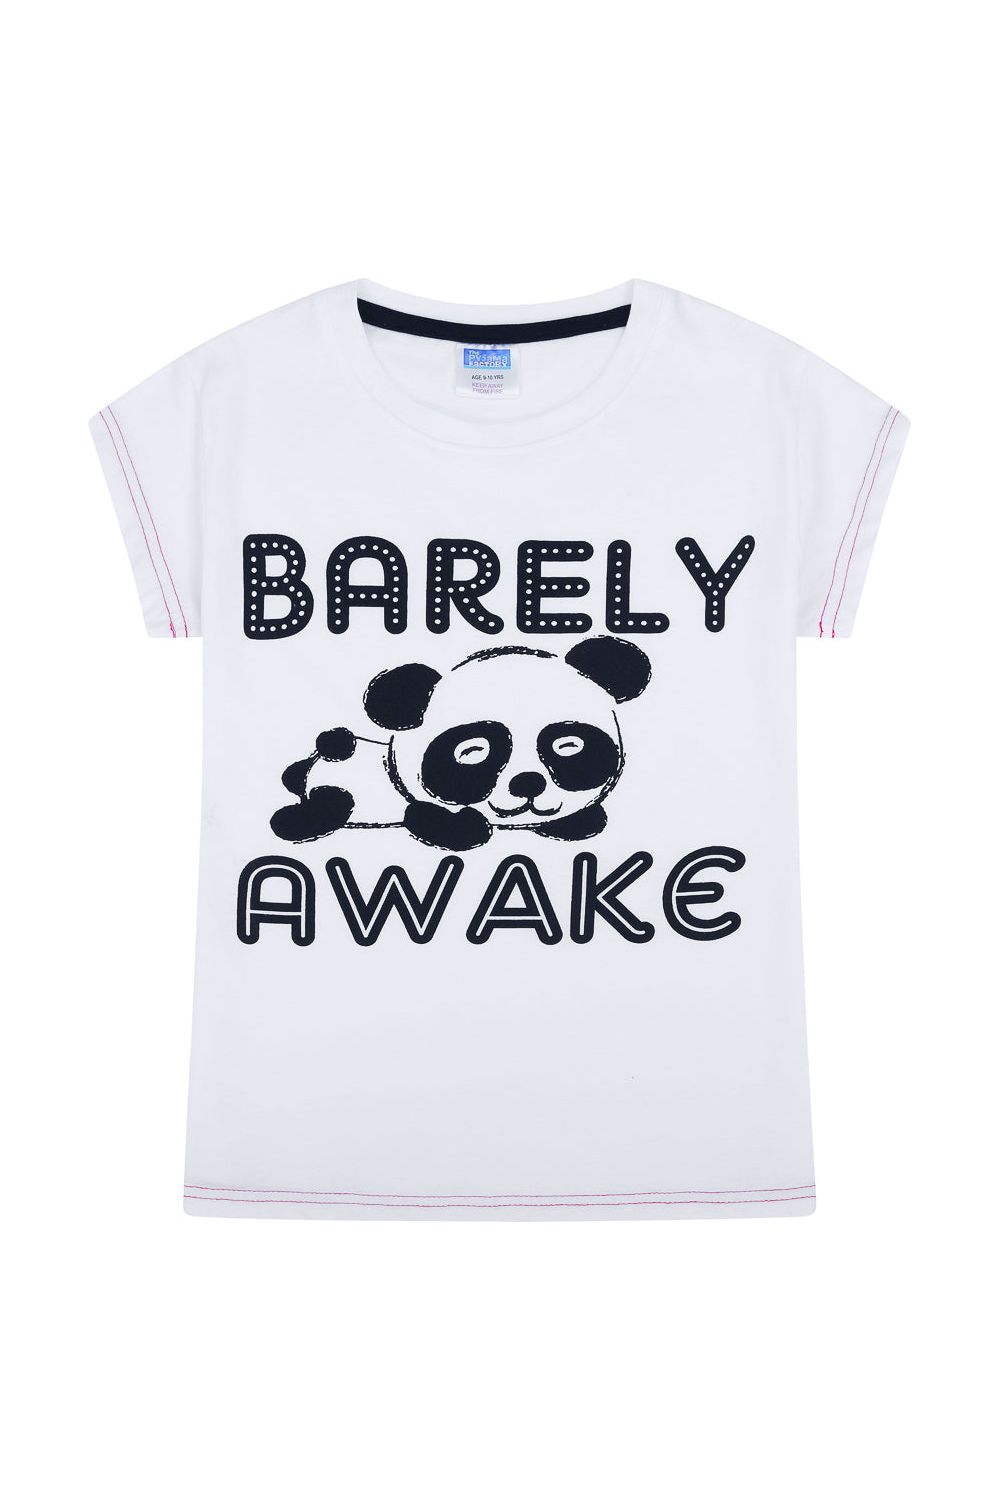 Girls Cool Barely Awake Panda Short Pyjamas - Pyjamas.com